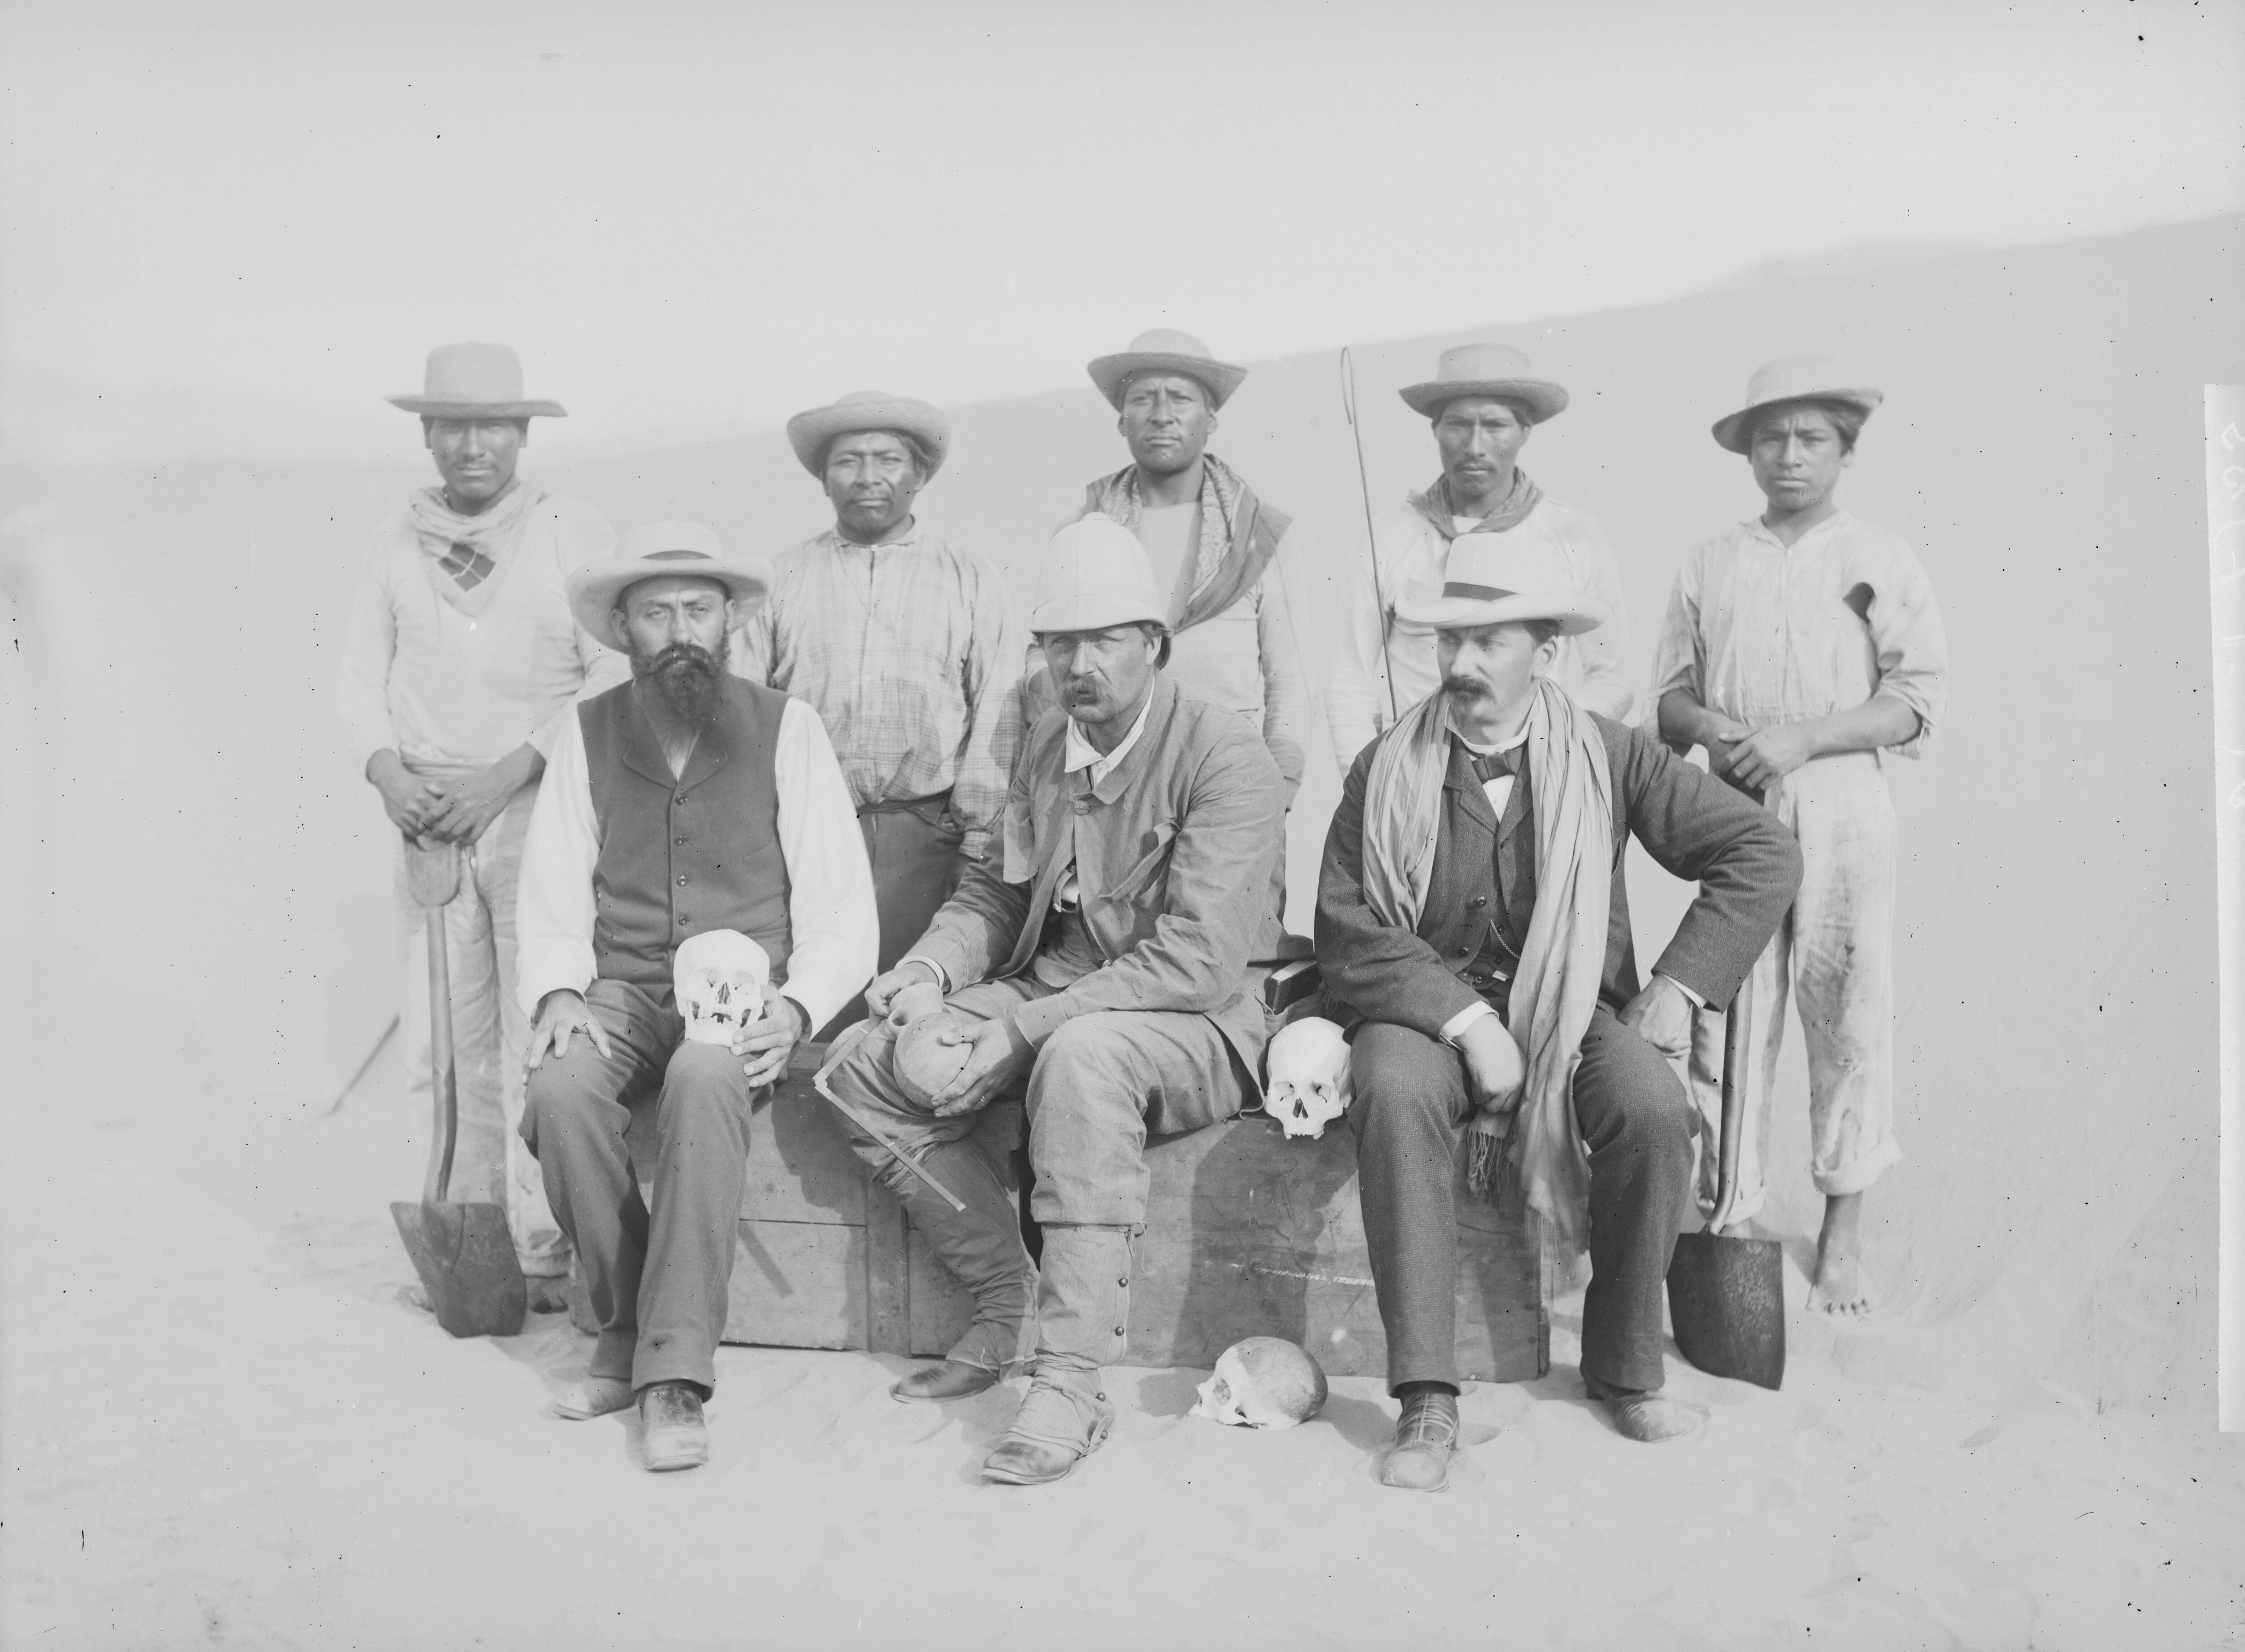 El abridor de tumbas y coleccionista estadounidense George Kiefer (izquierda) con el arqueólogo sueco Knut Hjalmar Stolpe (centro) y su equipo en 1884.